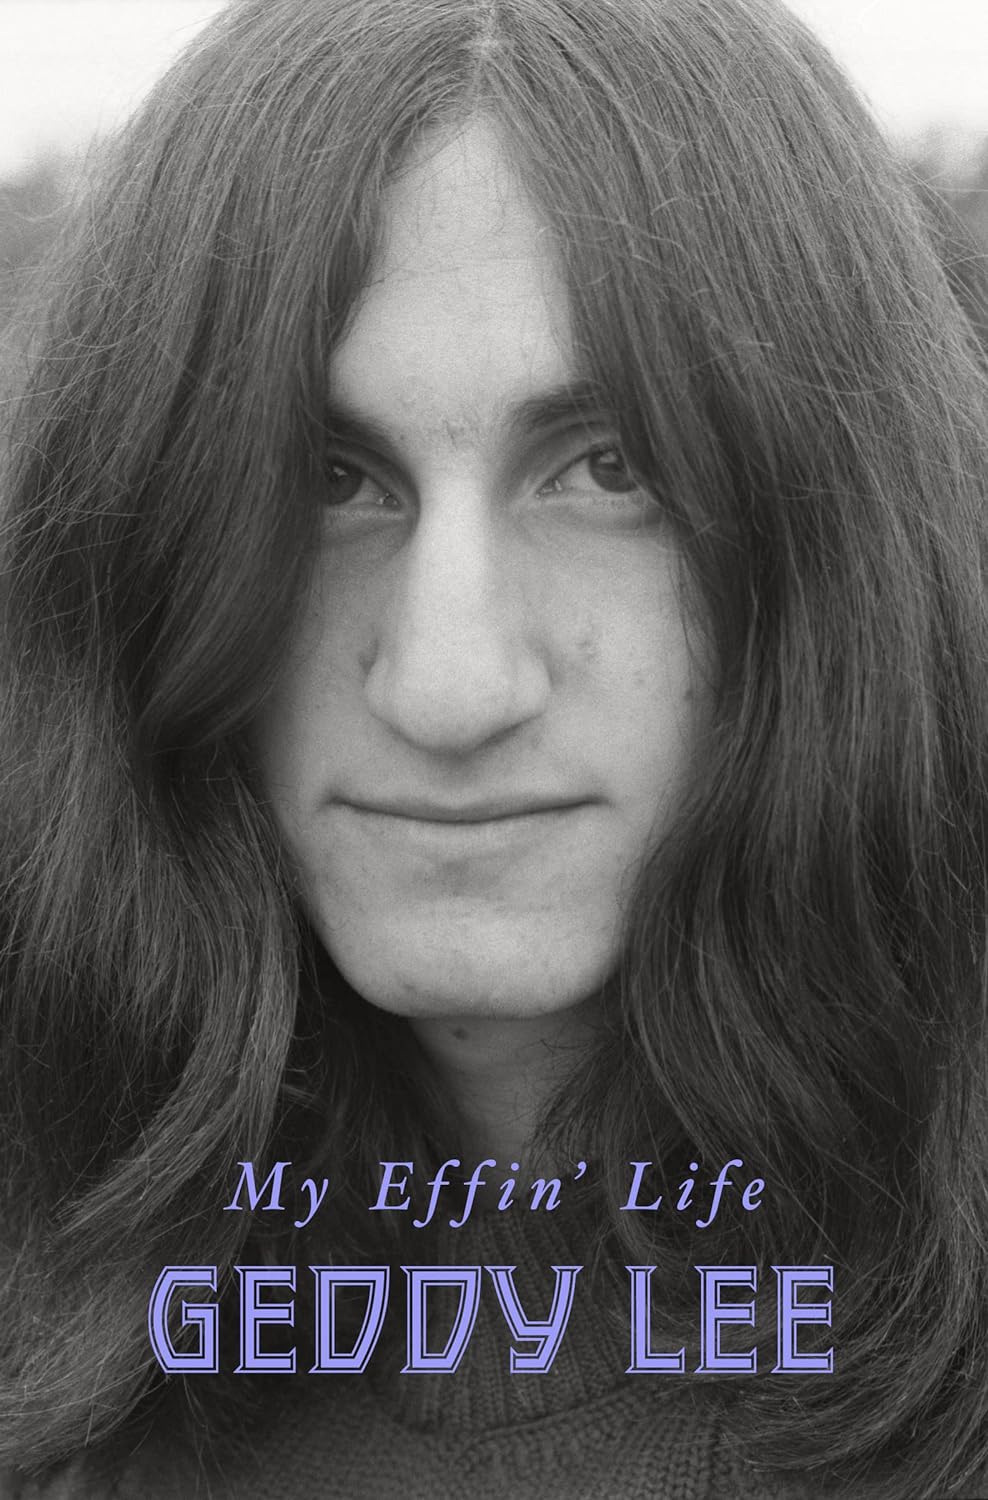 My Effin’ Life by Geddy Lee